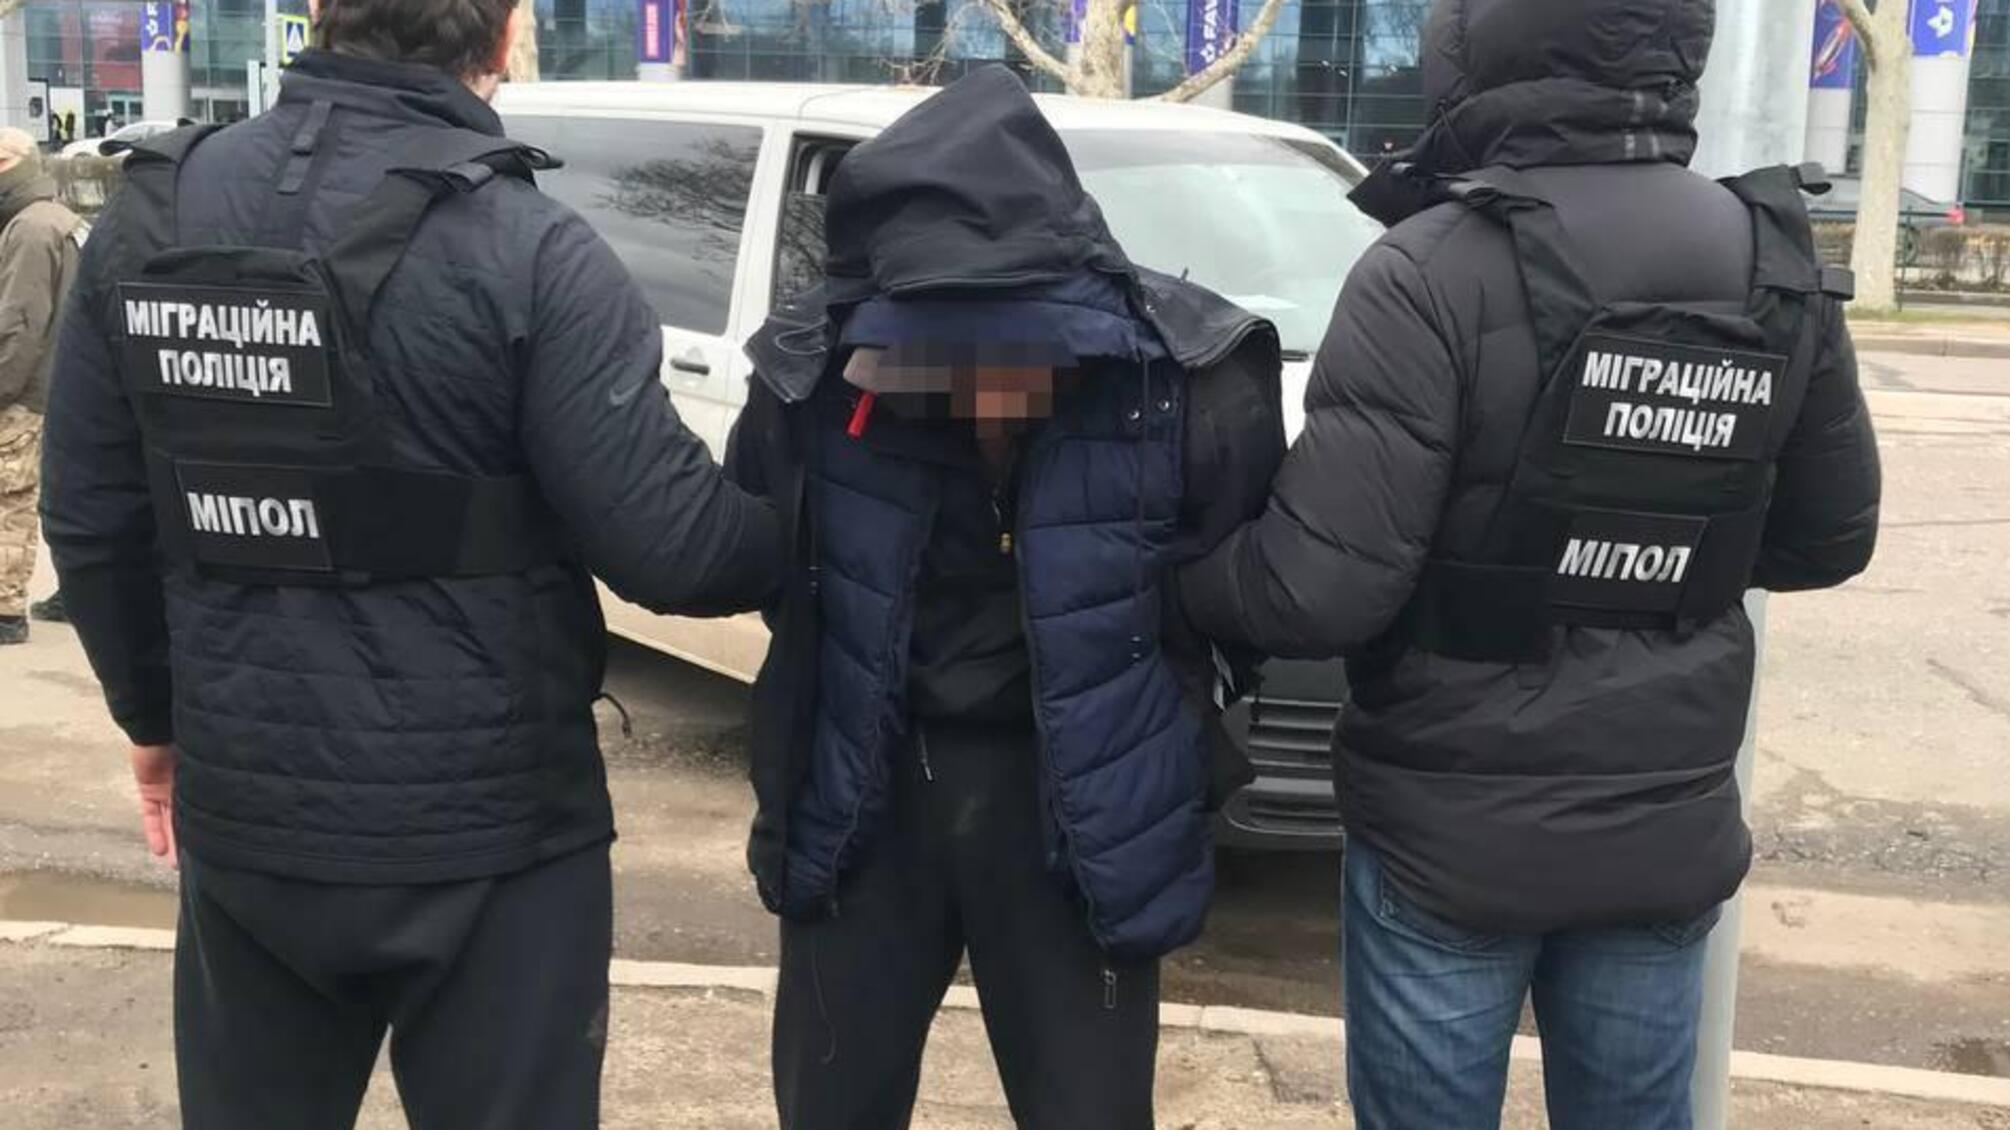 Правоохоронці оголосили підозру жителю Одеси у вербуванні чоловіків для експлуатації та втягнення у злочинну діяльність за кордоном